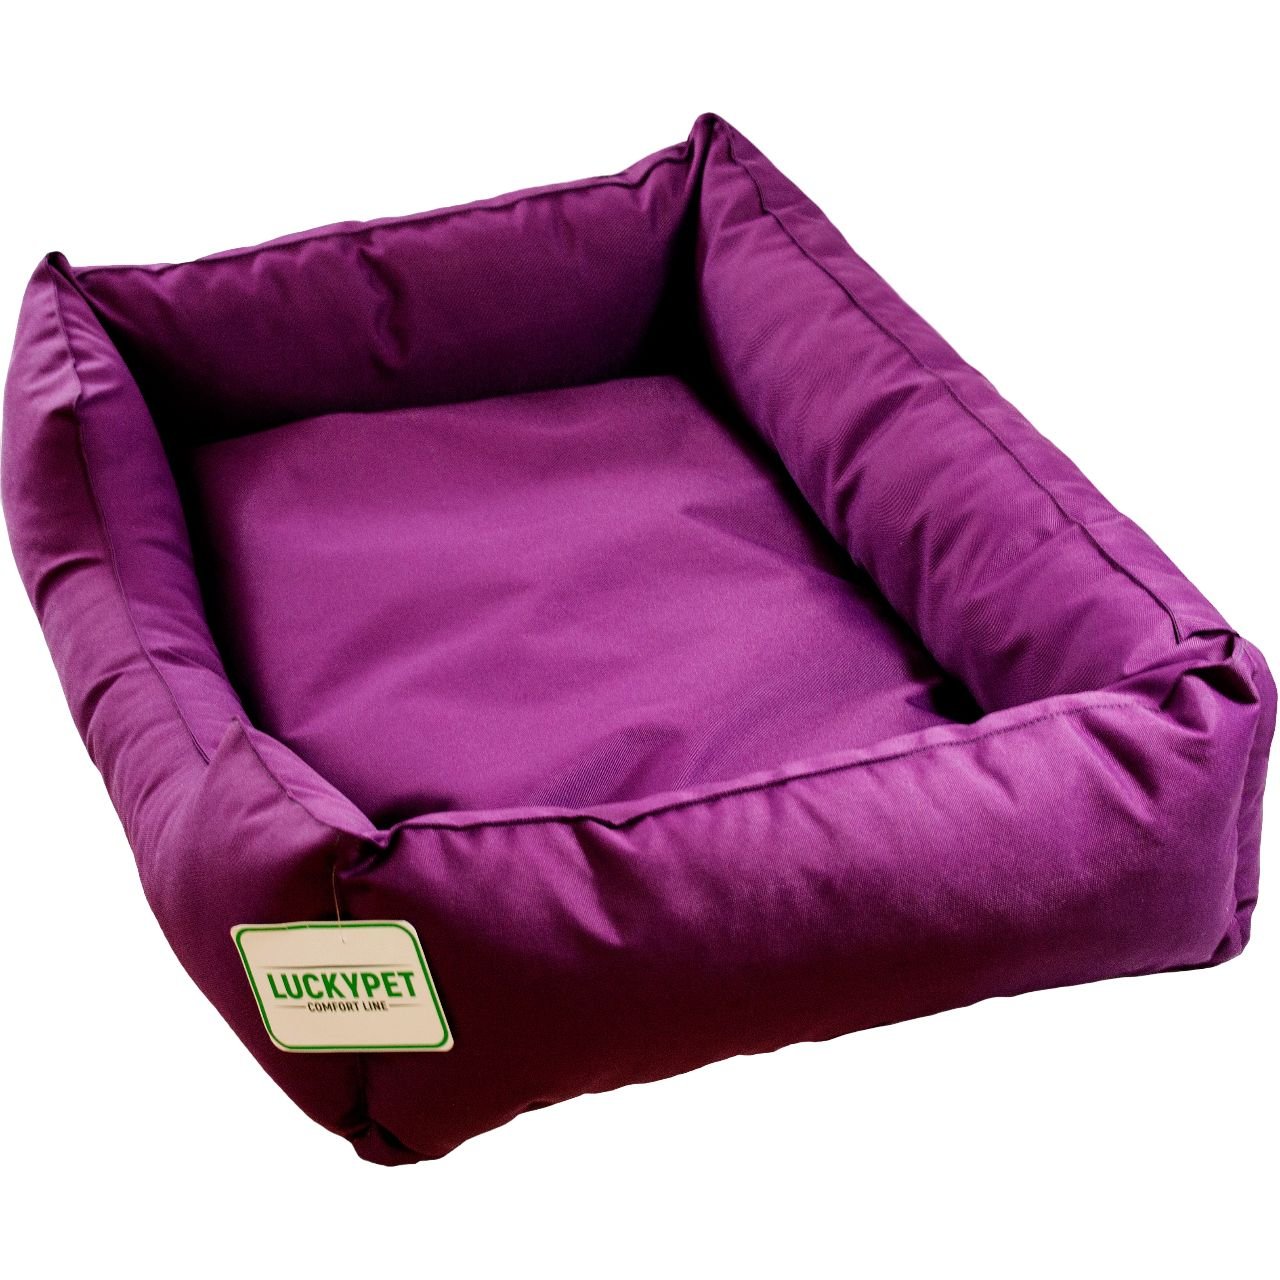 Лежак Lucky Pet Маркиз №5, 70x100x24 см, фиолетовый - фото 1